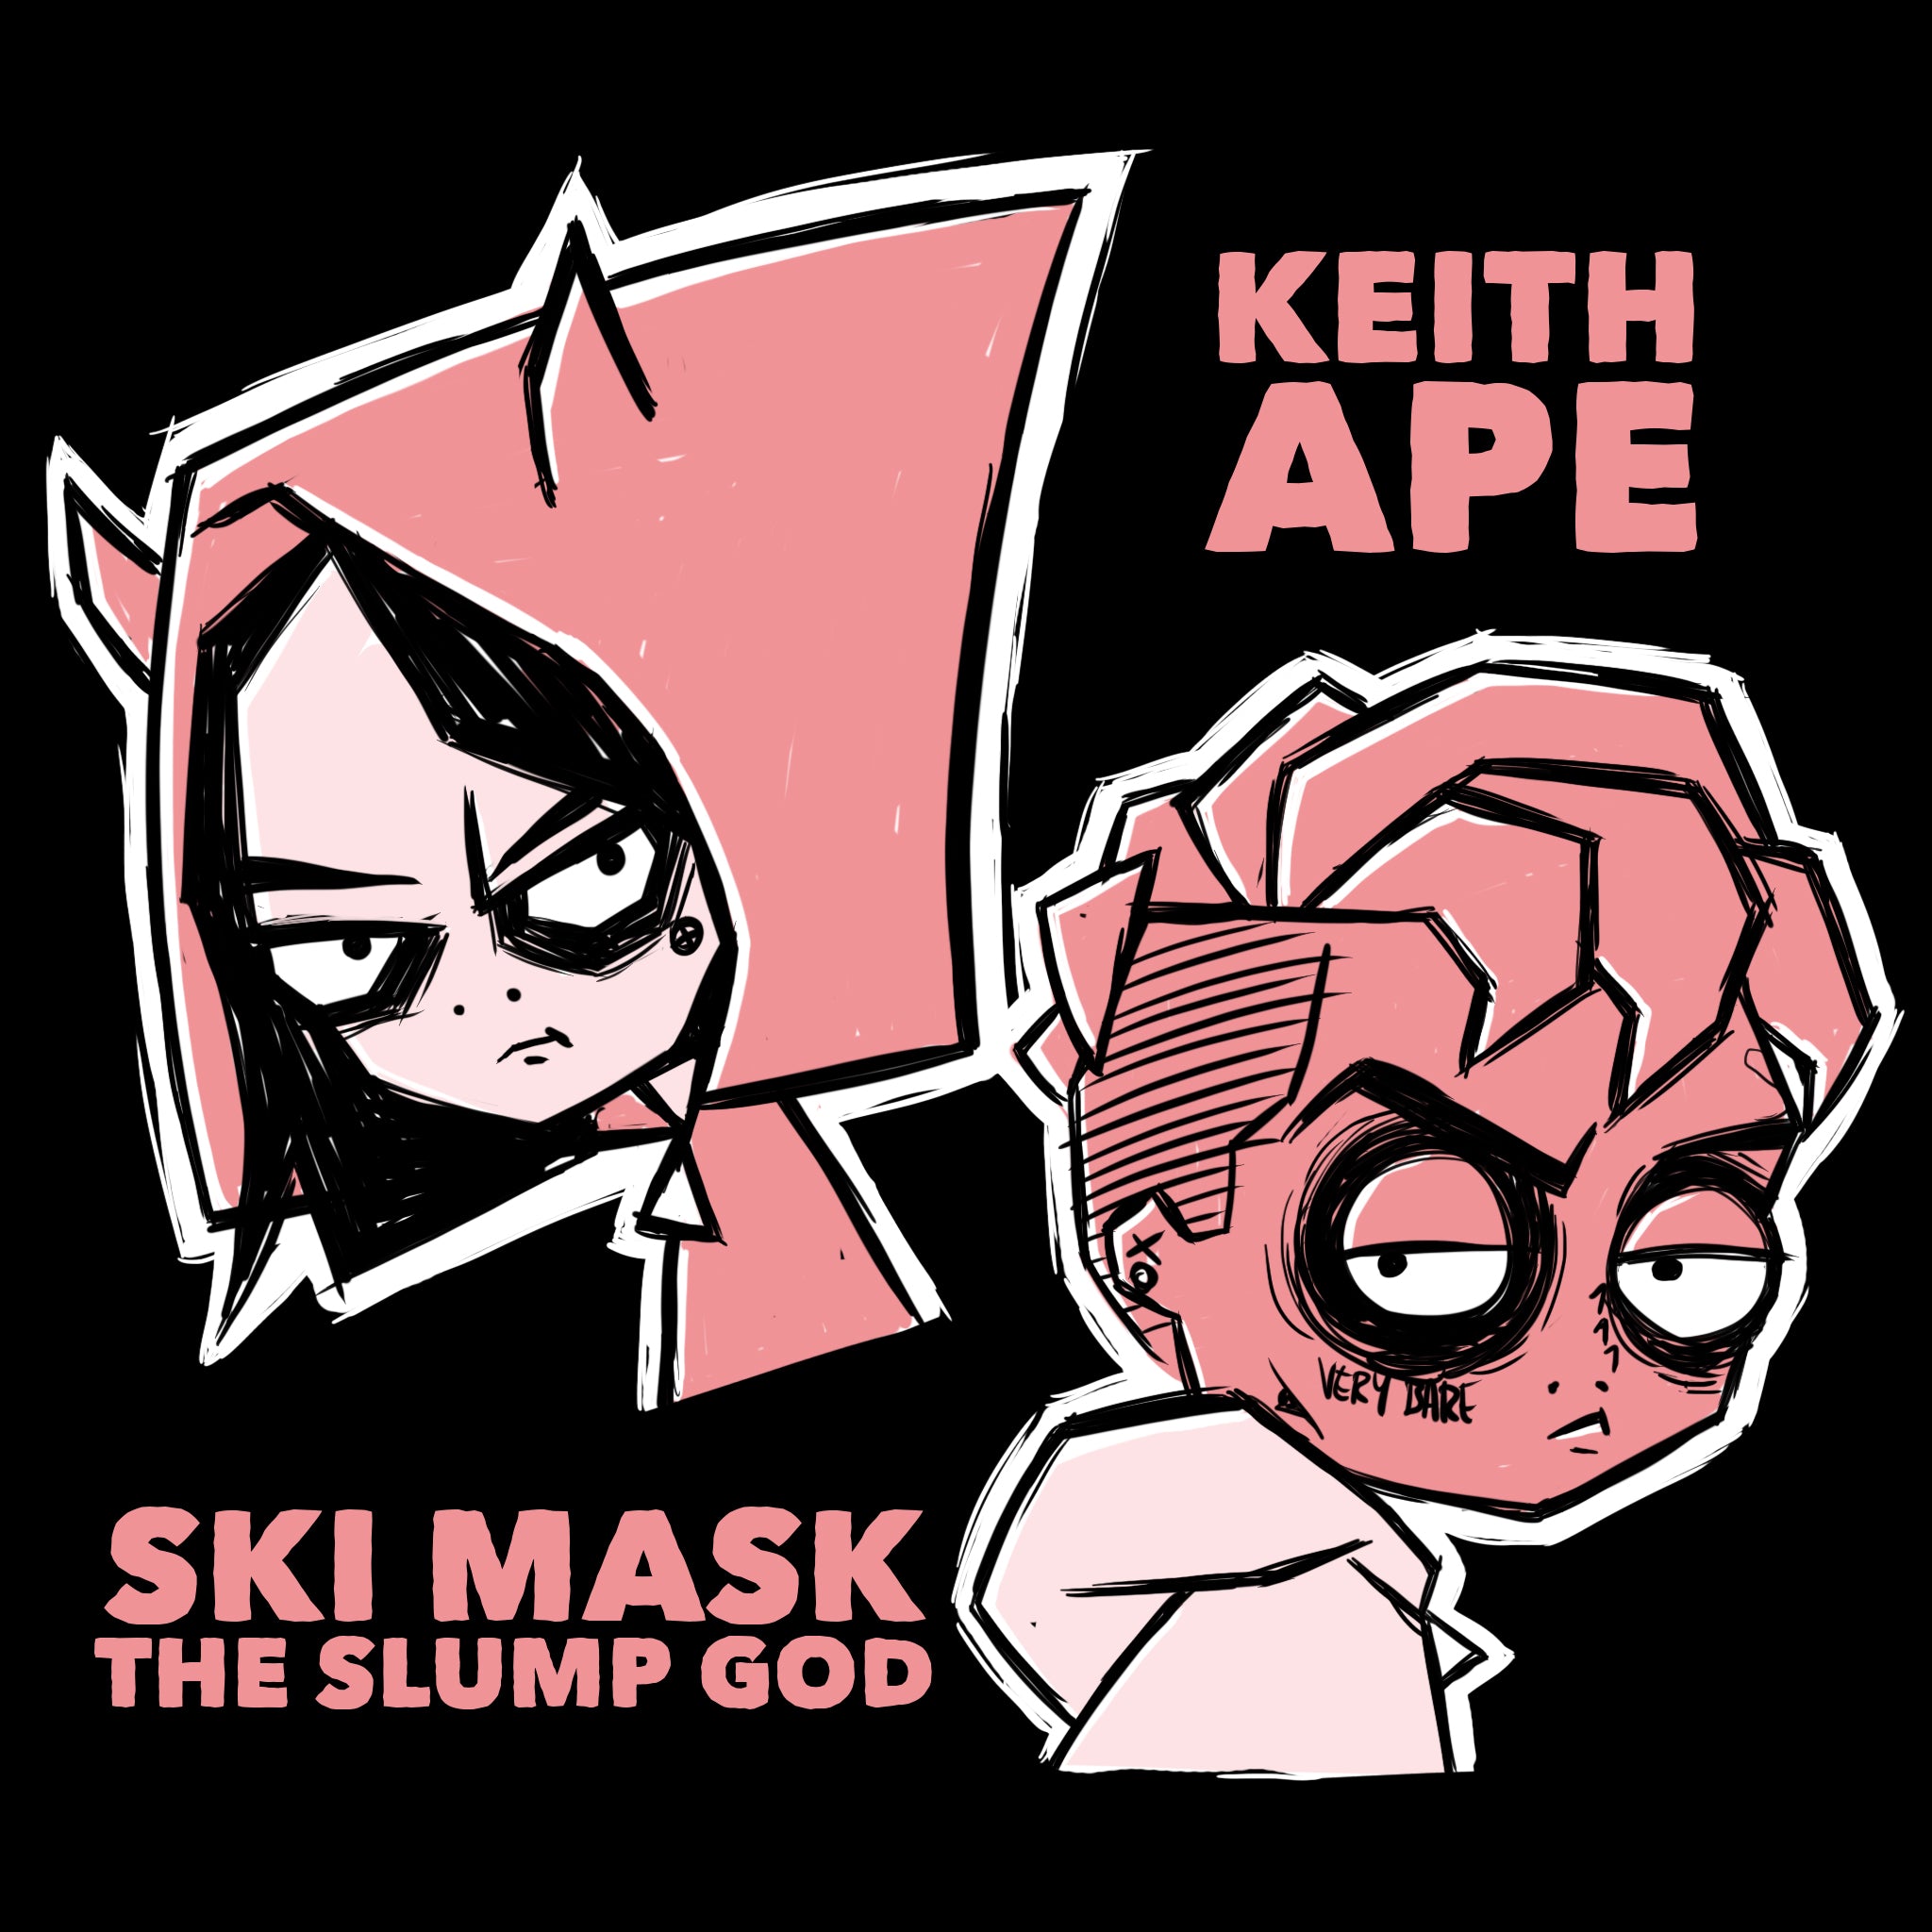 håndtering plejeforældre Ældre borgere Keith Ape x Ski Mask The Slump God "ACHOO!" – Akumu Ink Clothing